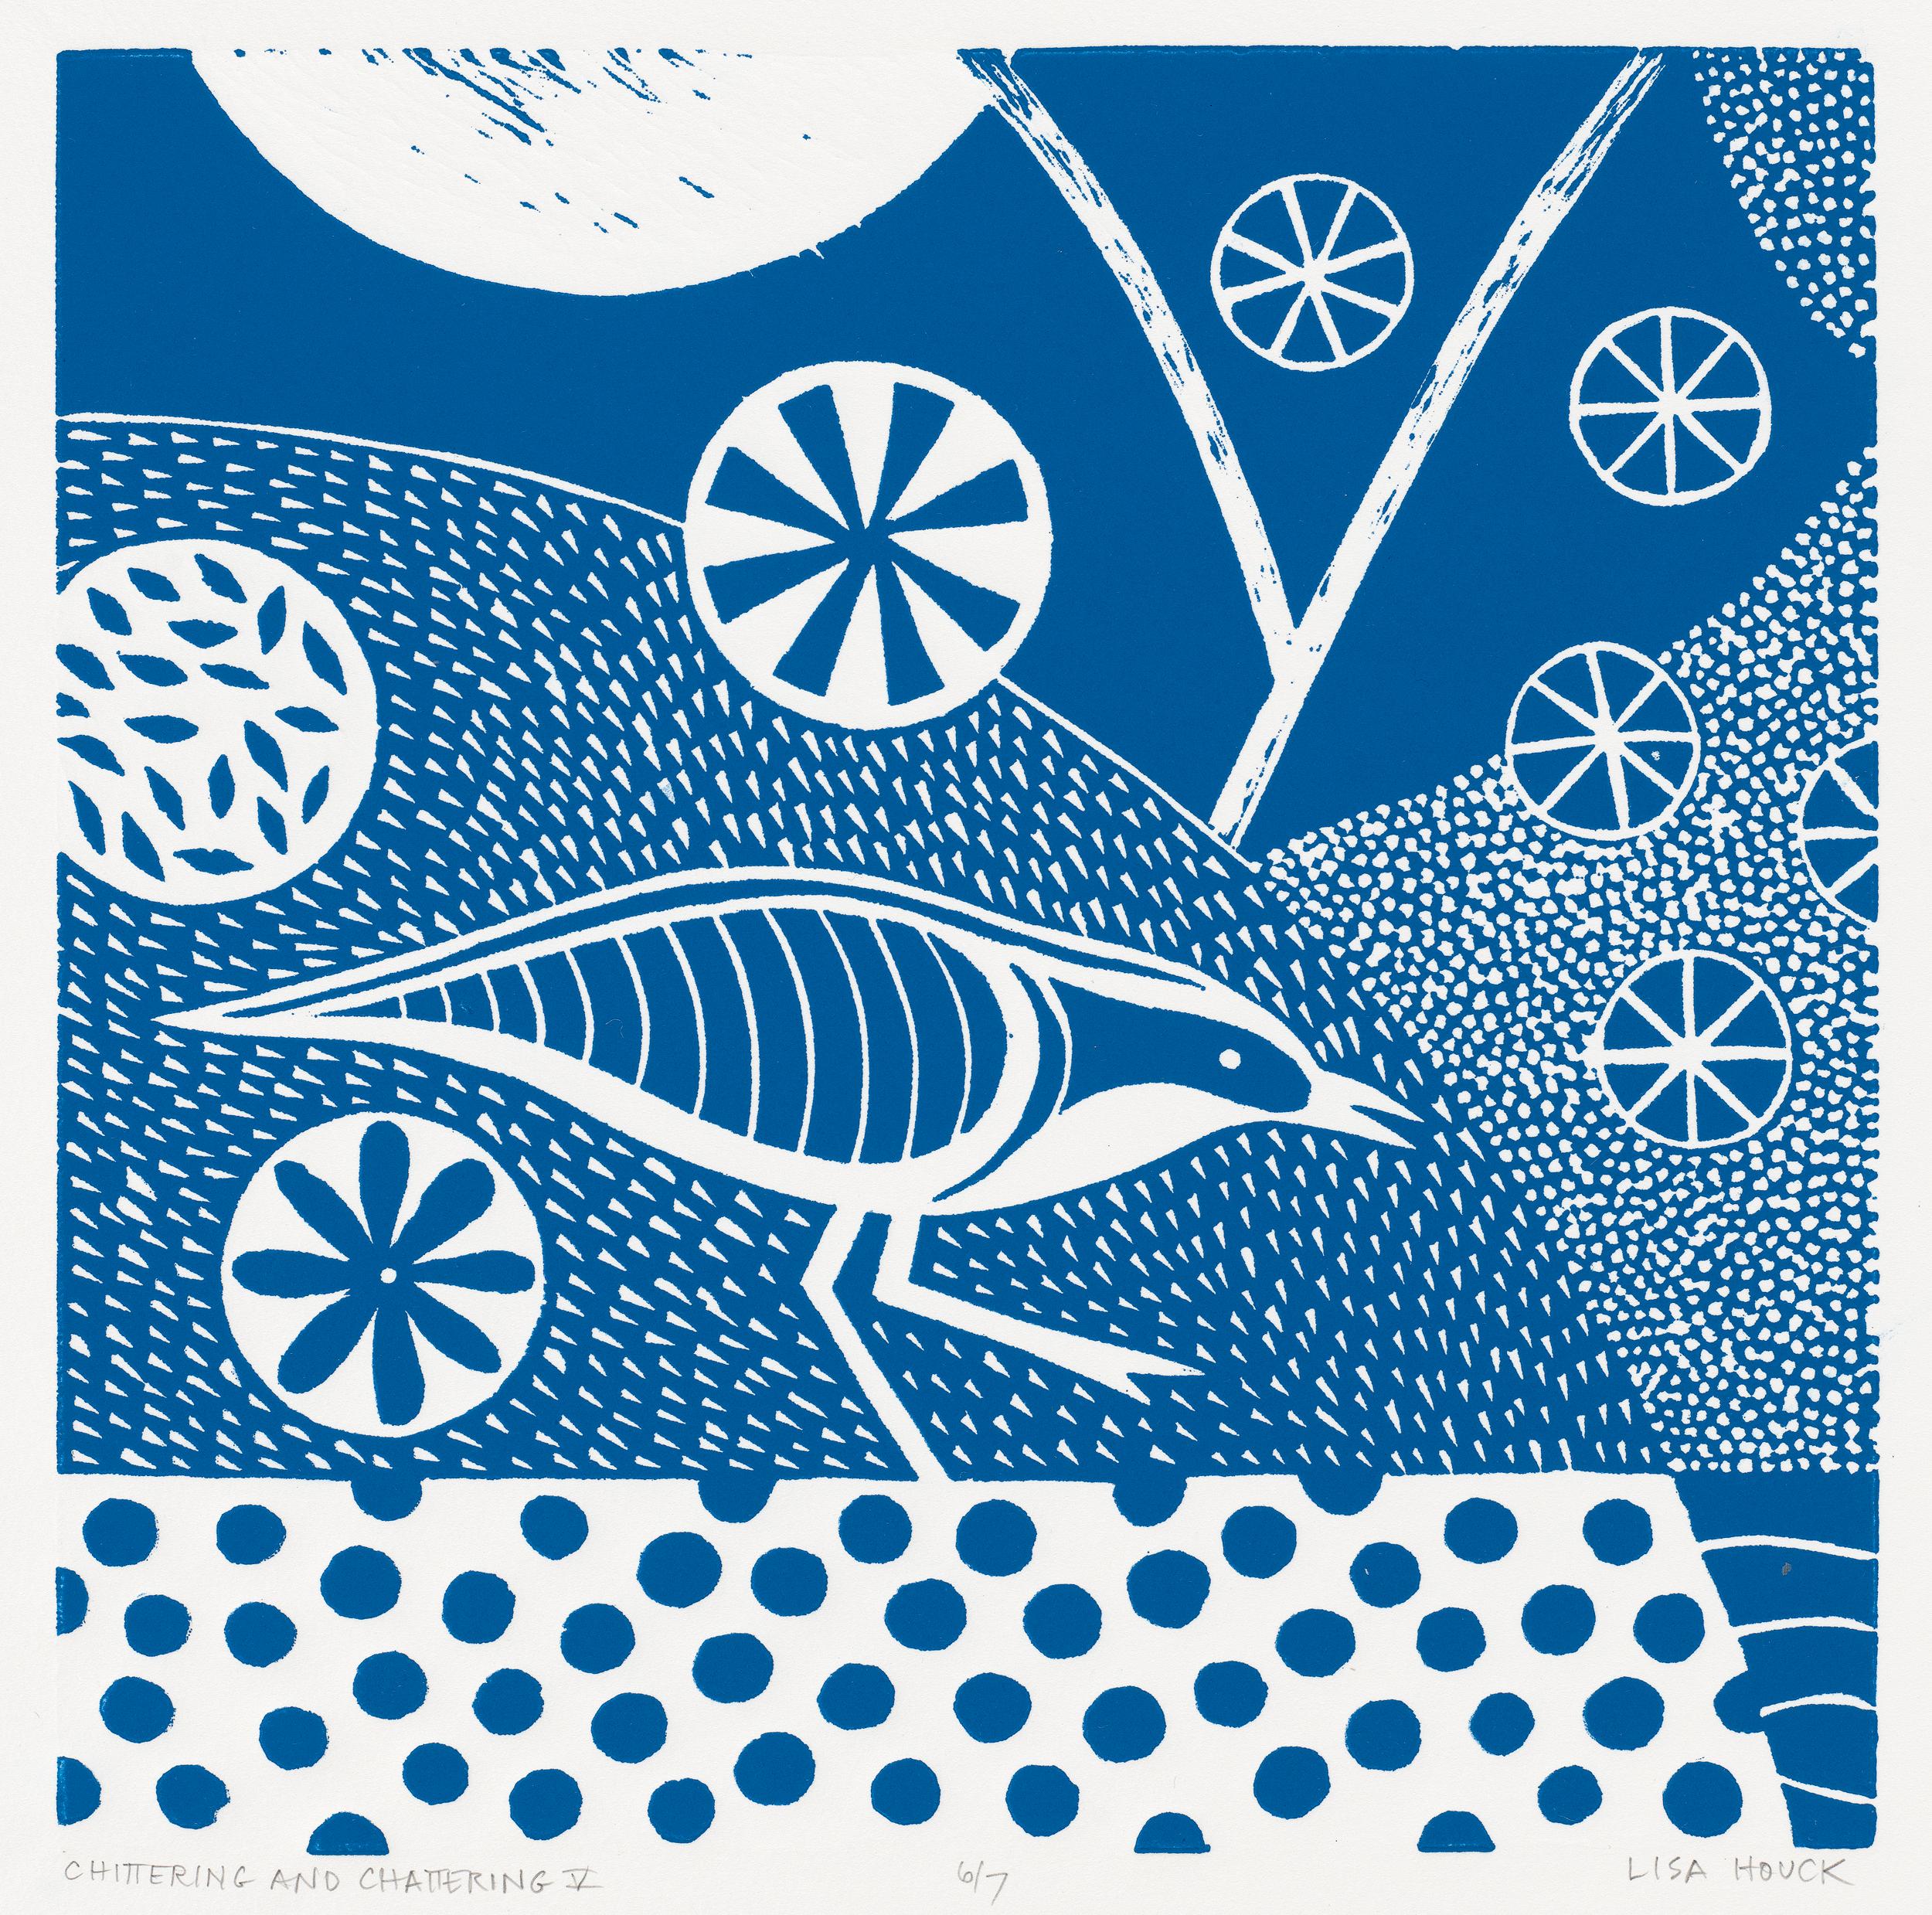 Lisa Houck Animal Print - 'Chittering & Chattering V'  Folk inspired linocut bird series in blue and white